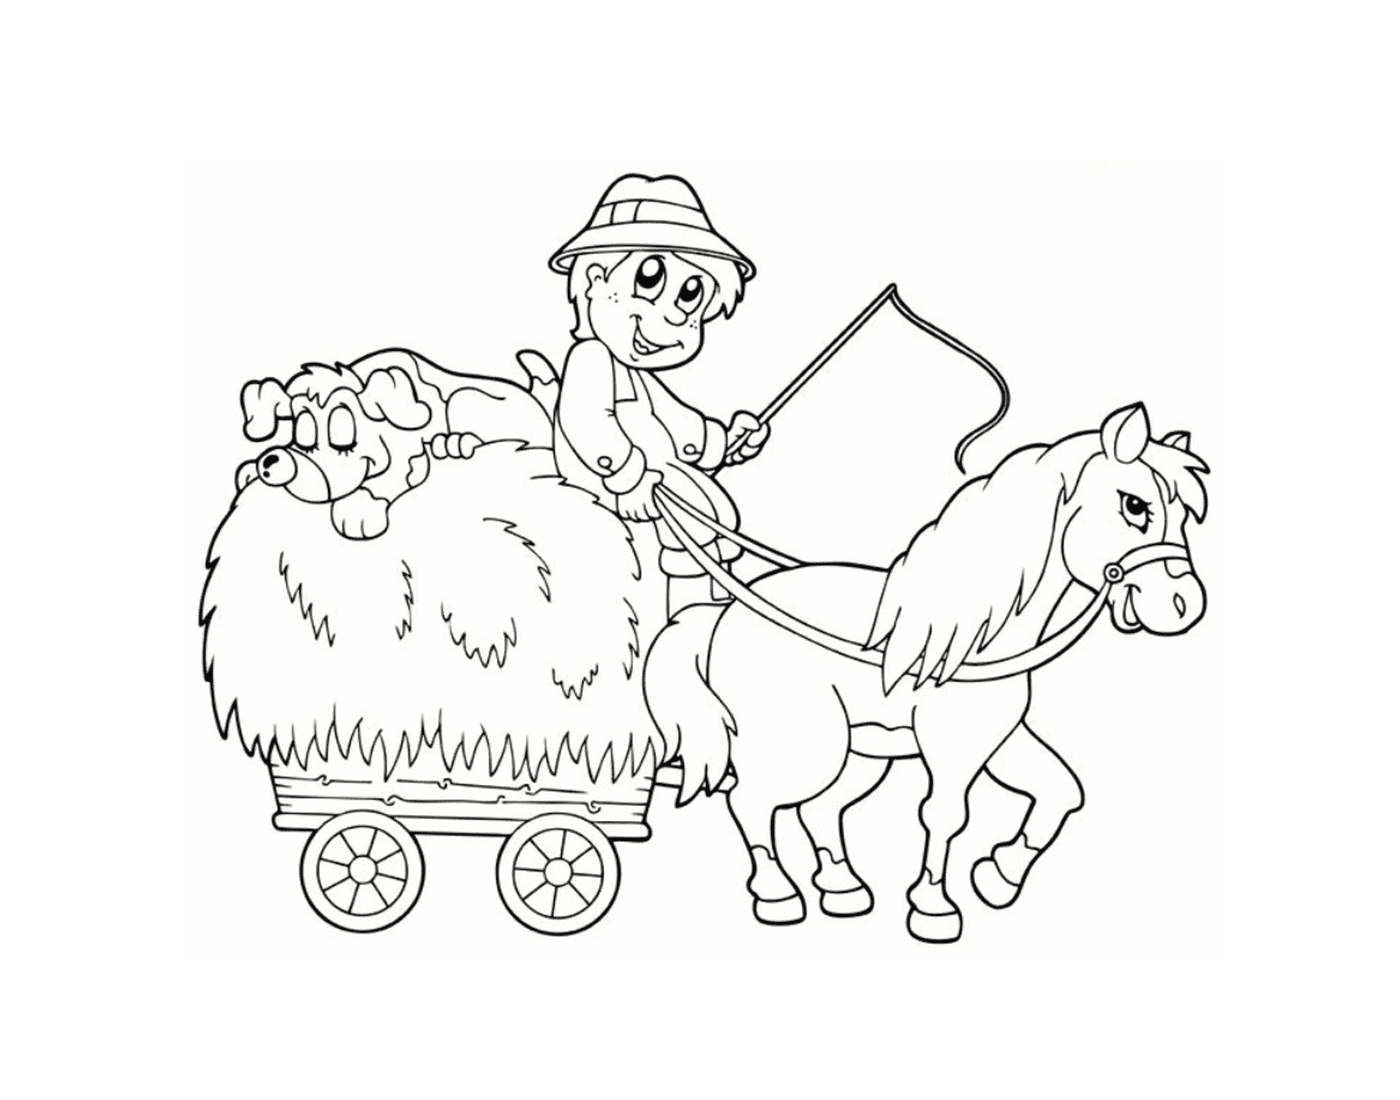  Agricoltore accompagnato dal suo fedele pony 